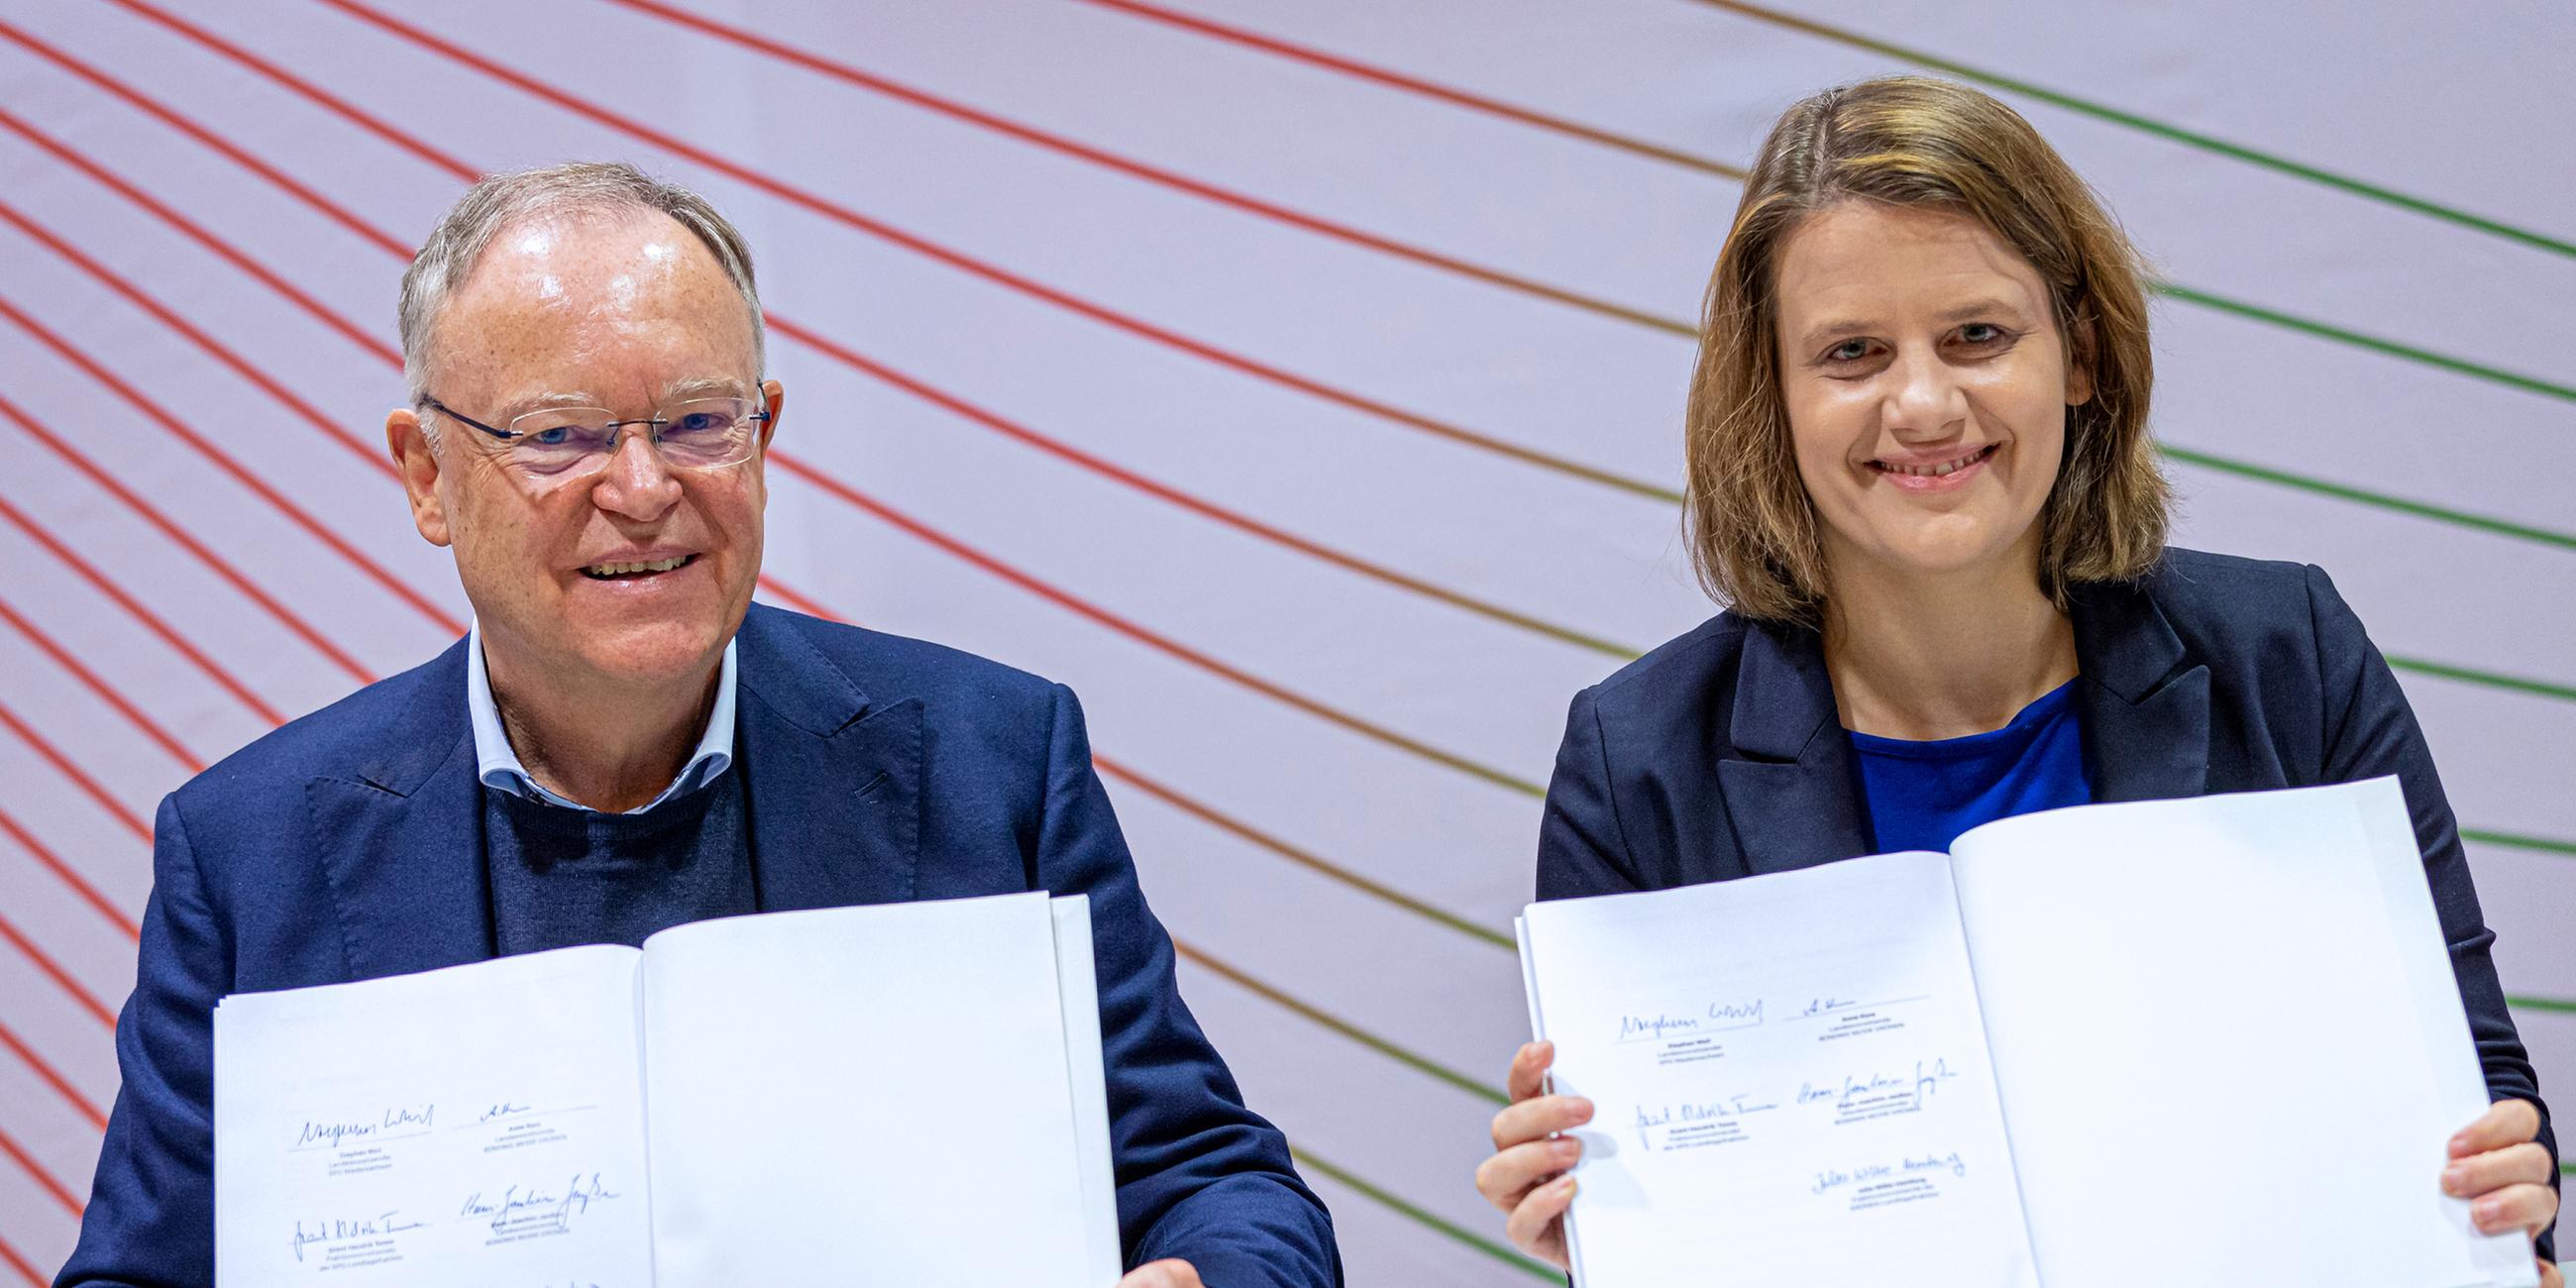 Unterzeichnung des Koalitionsvertrags von SPD und Grünen in Niedersachsen